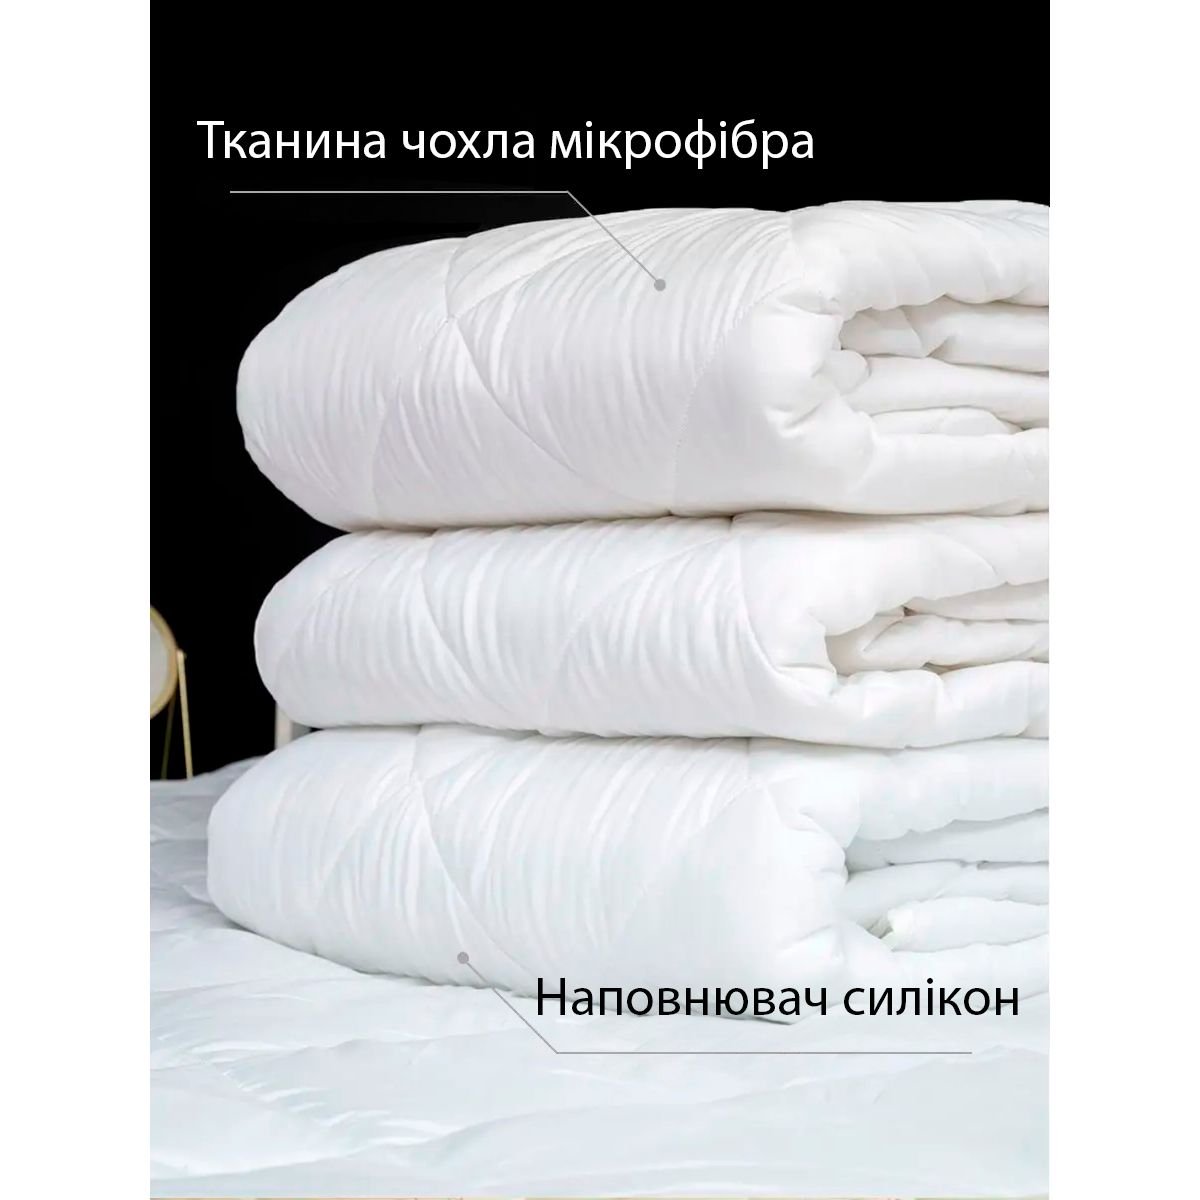 Одеяло зимнее Good-Dream Larenn Winter 215х155 см (GDBLW155215) - фото 2